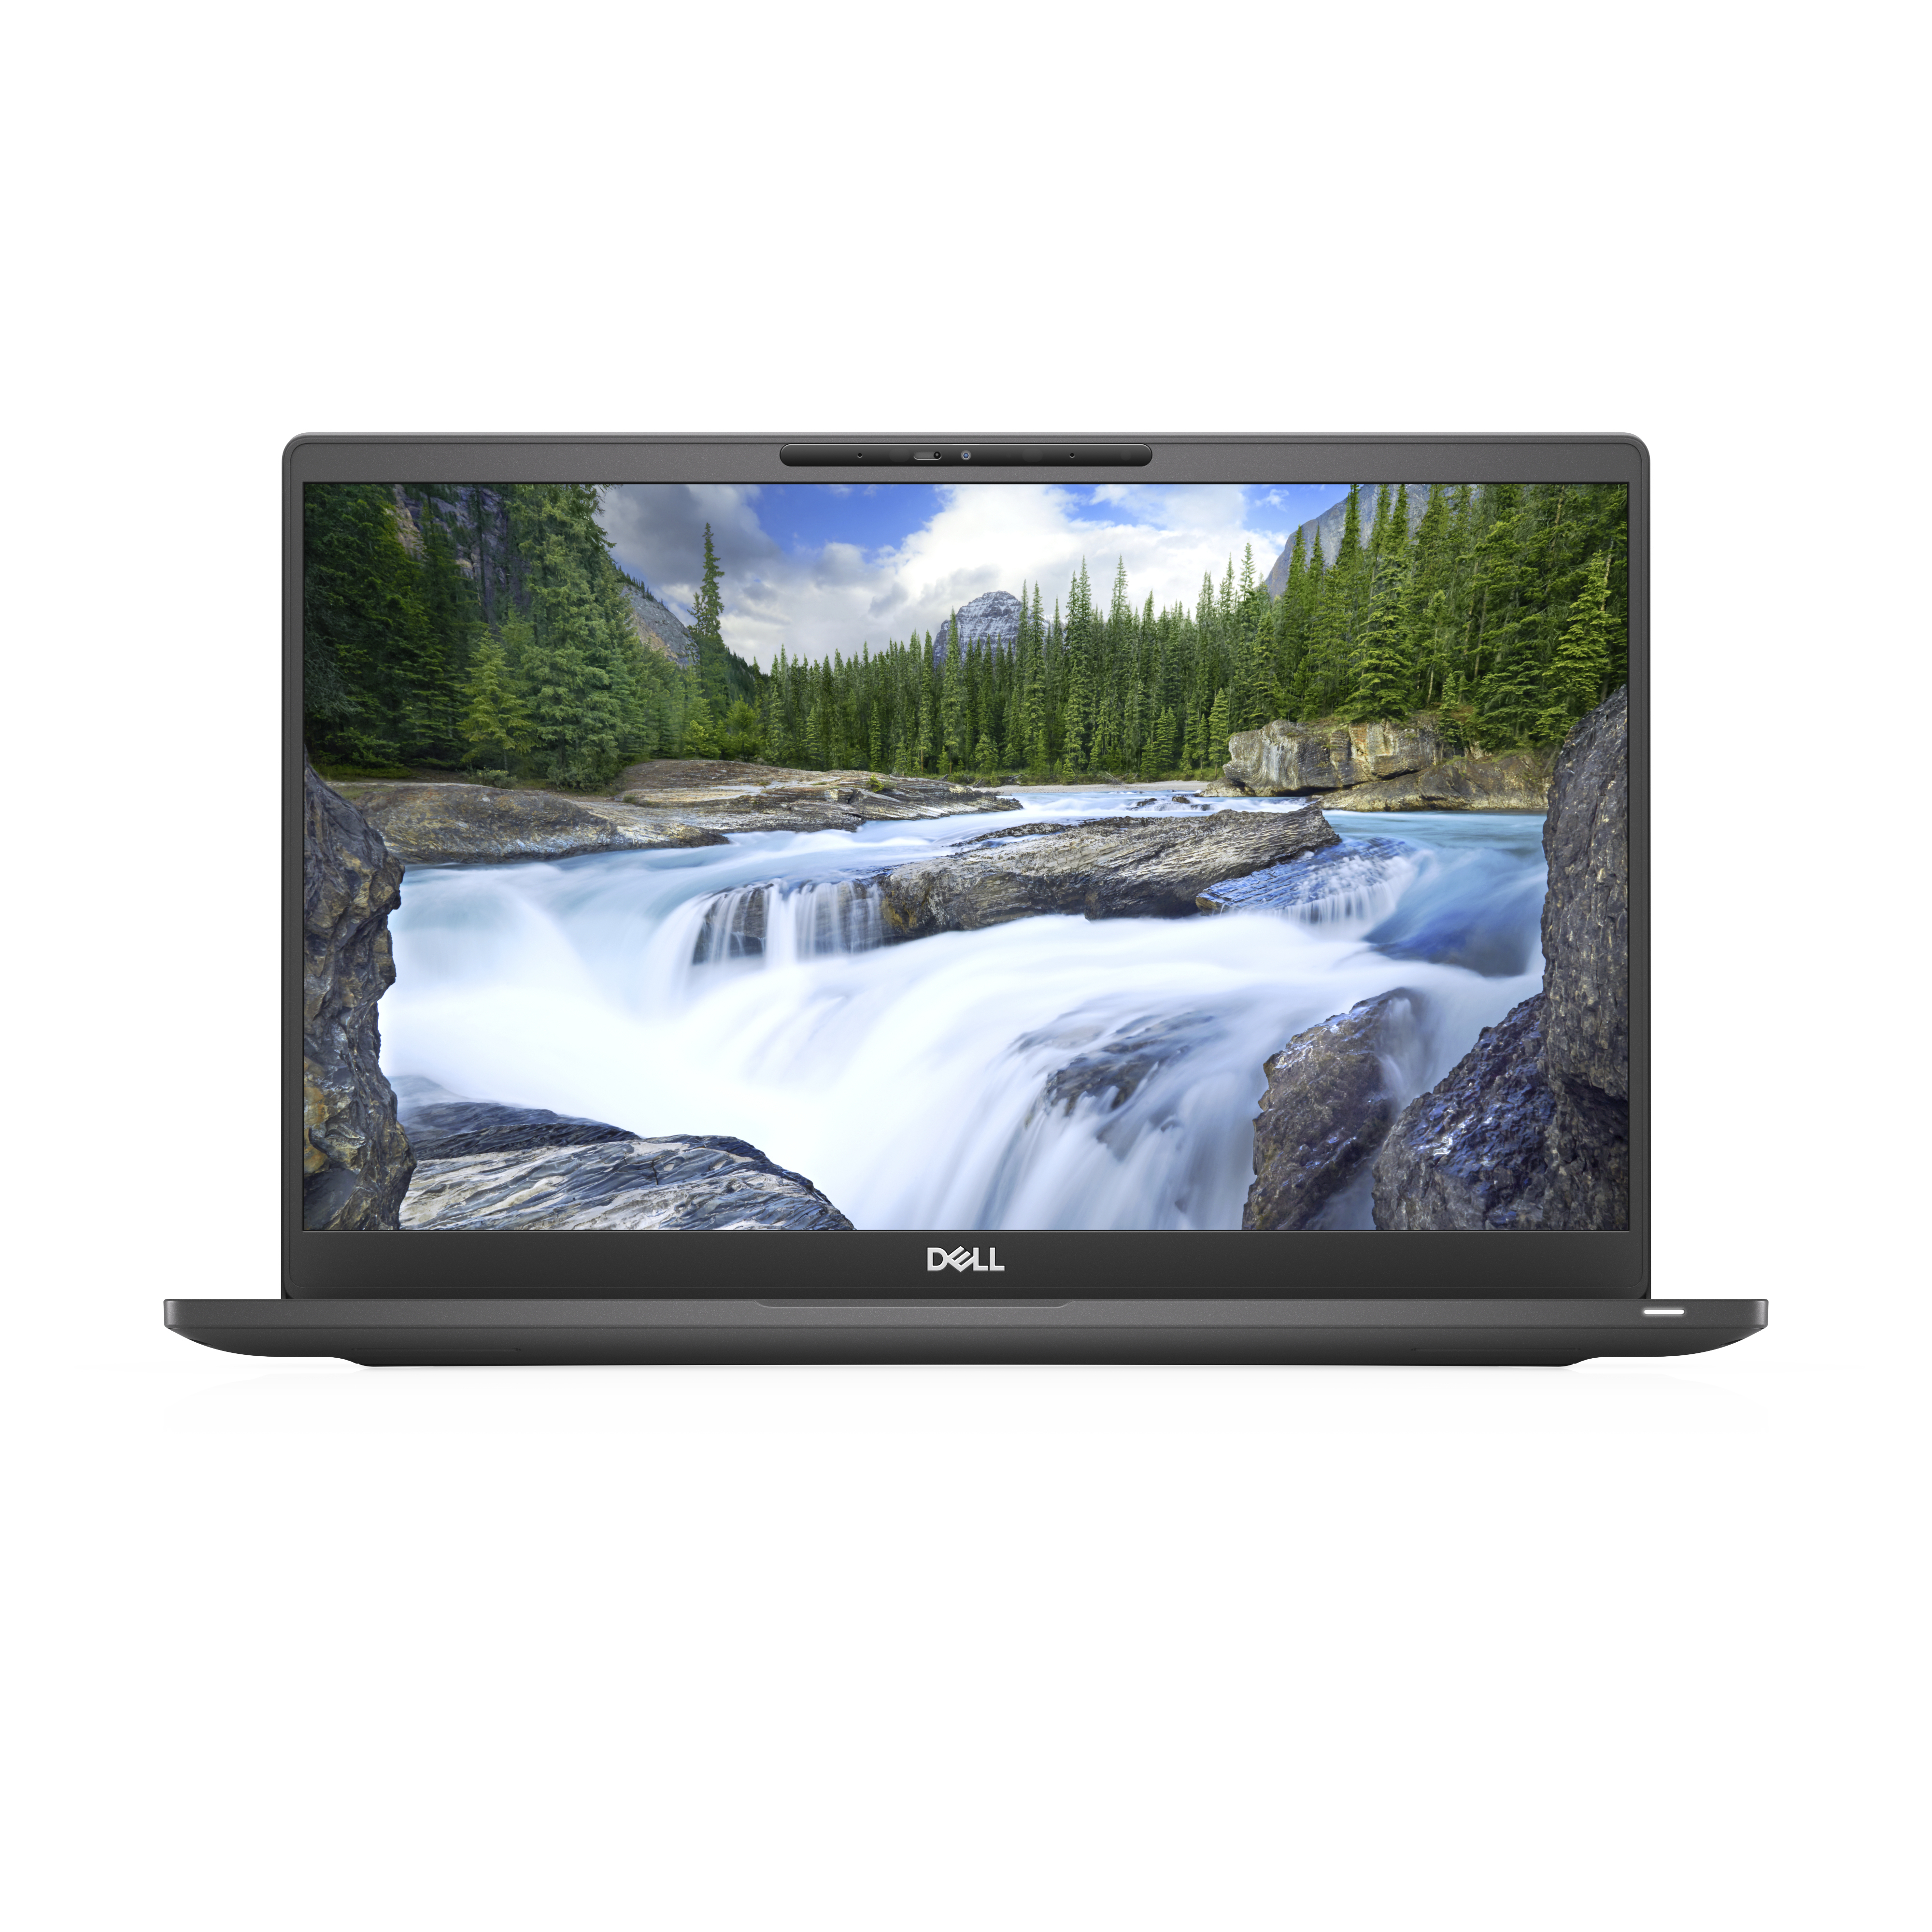 Laptop Dell L740I7Ks16512W10P3Ps Uhd 620 16 Gb 14" W10Pro